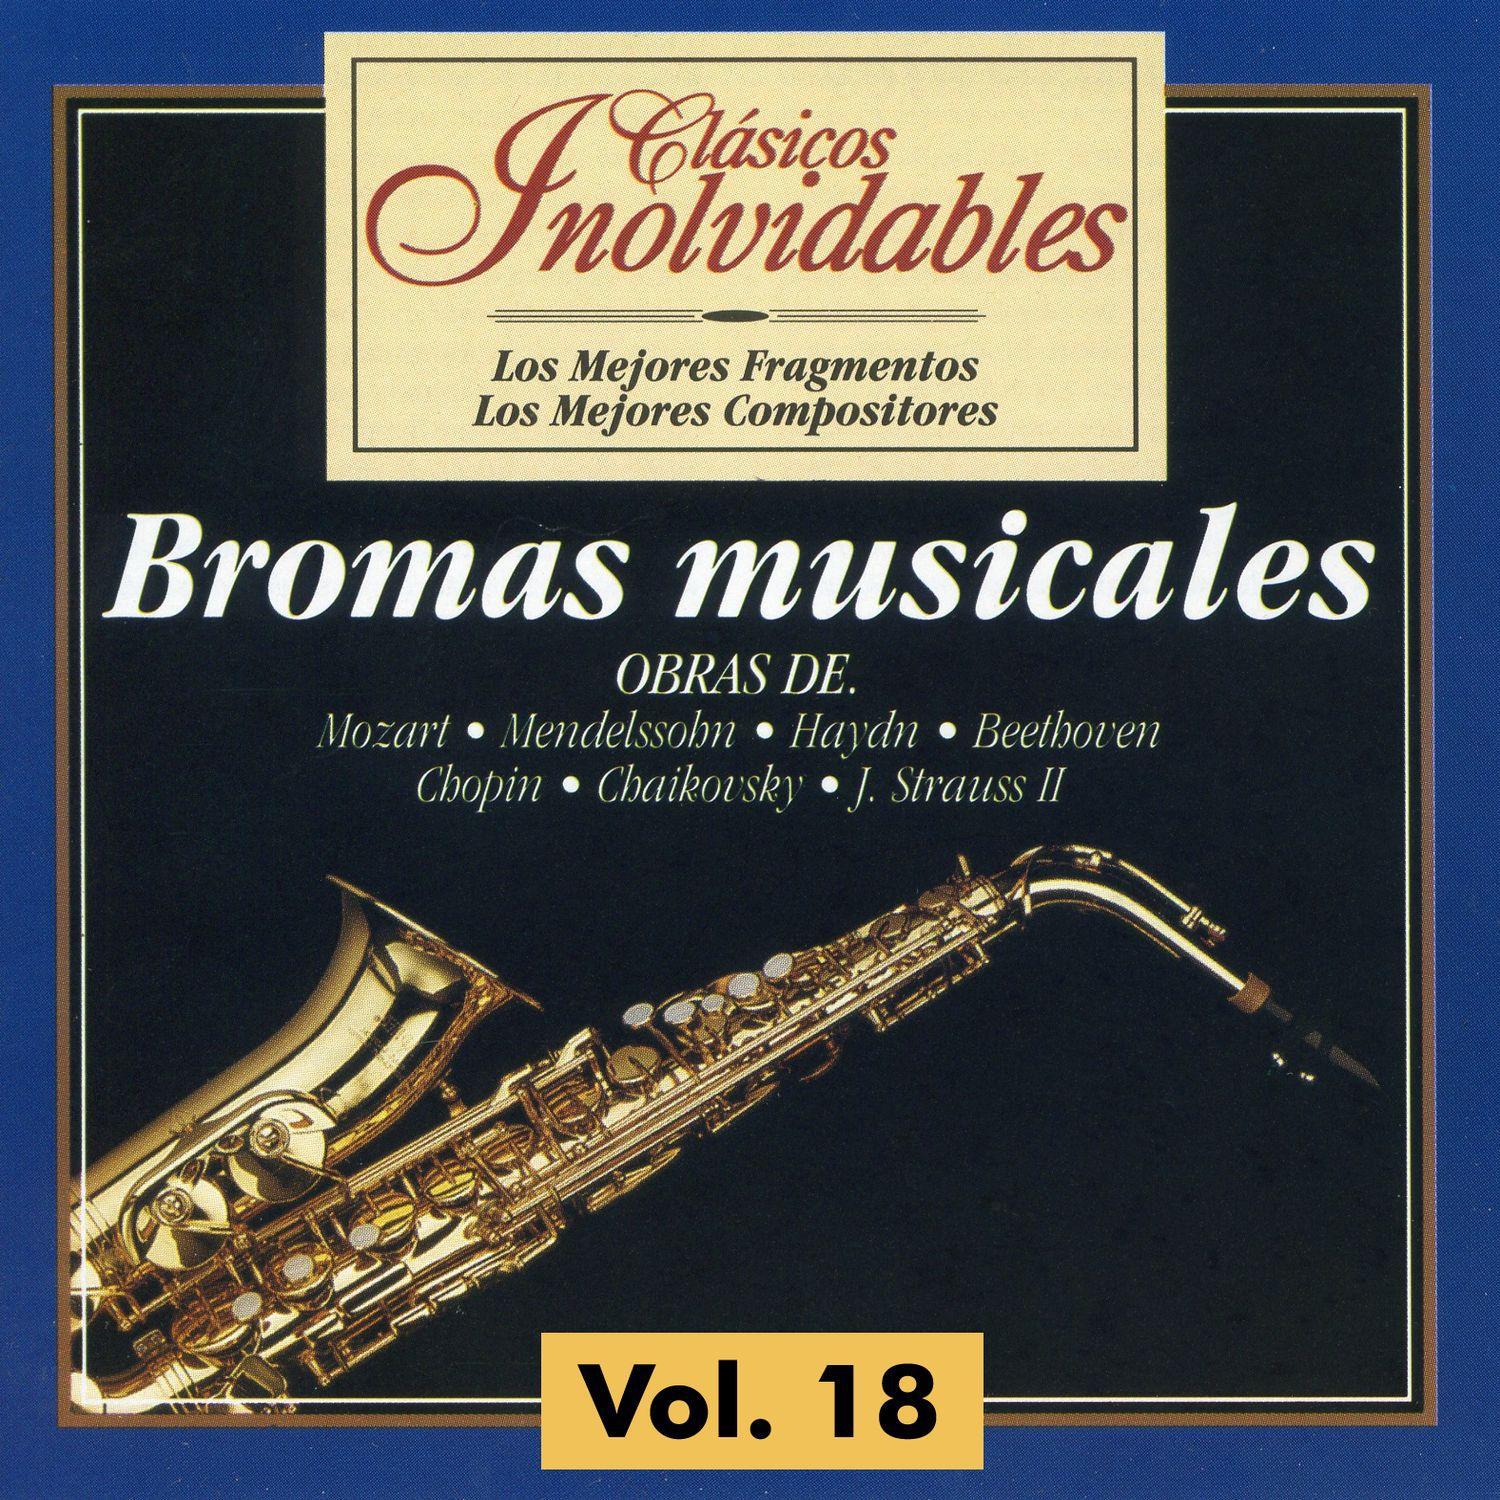 Cla sicos Inolvidables Vol. 18, Bromas Musicales